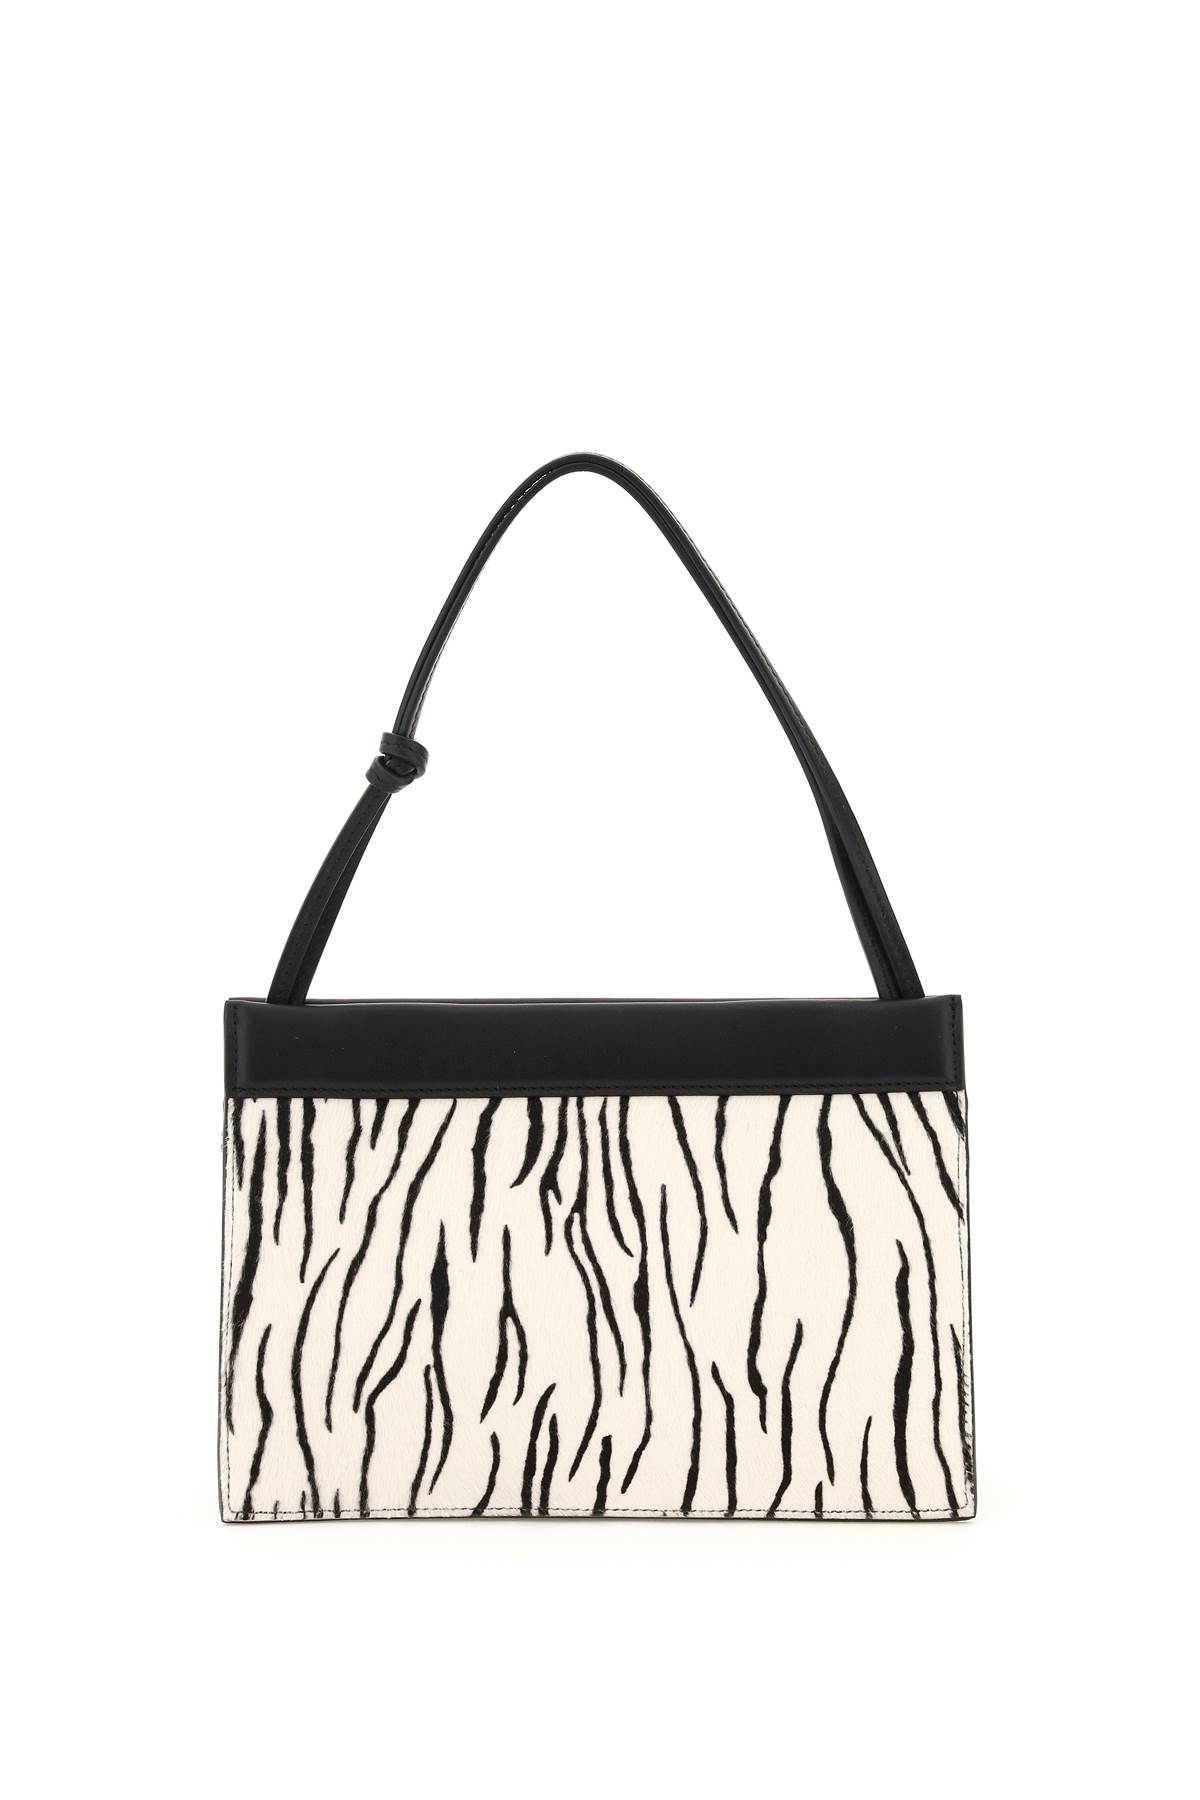 Wandler Hanna Zebra-striped Pony Skin Bag